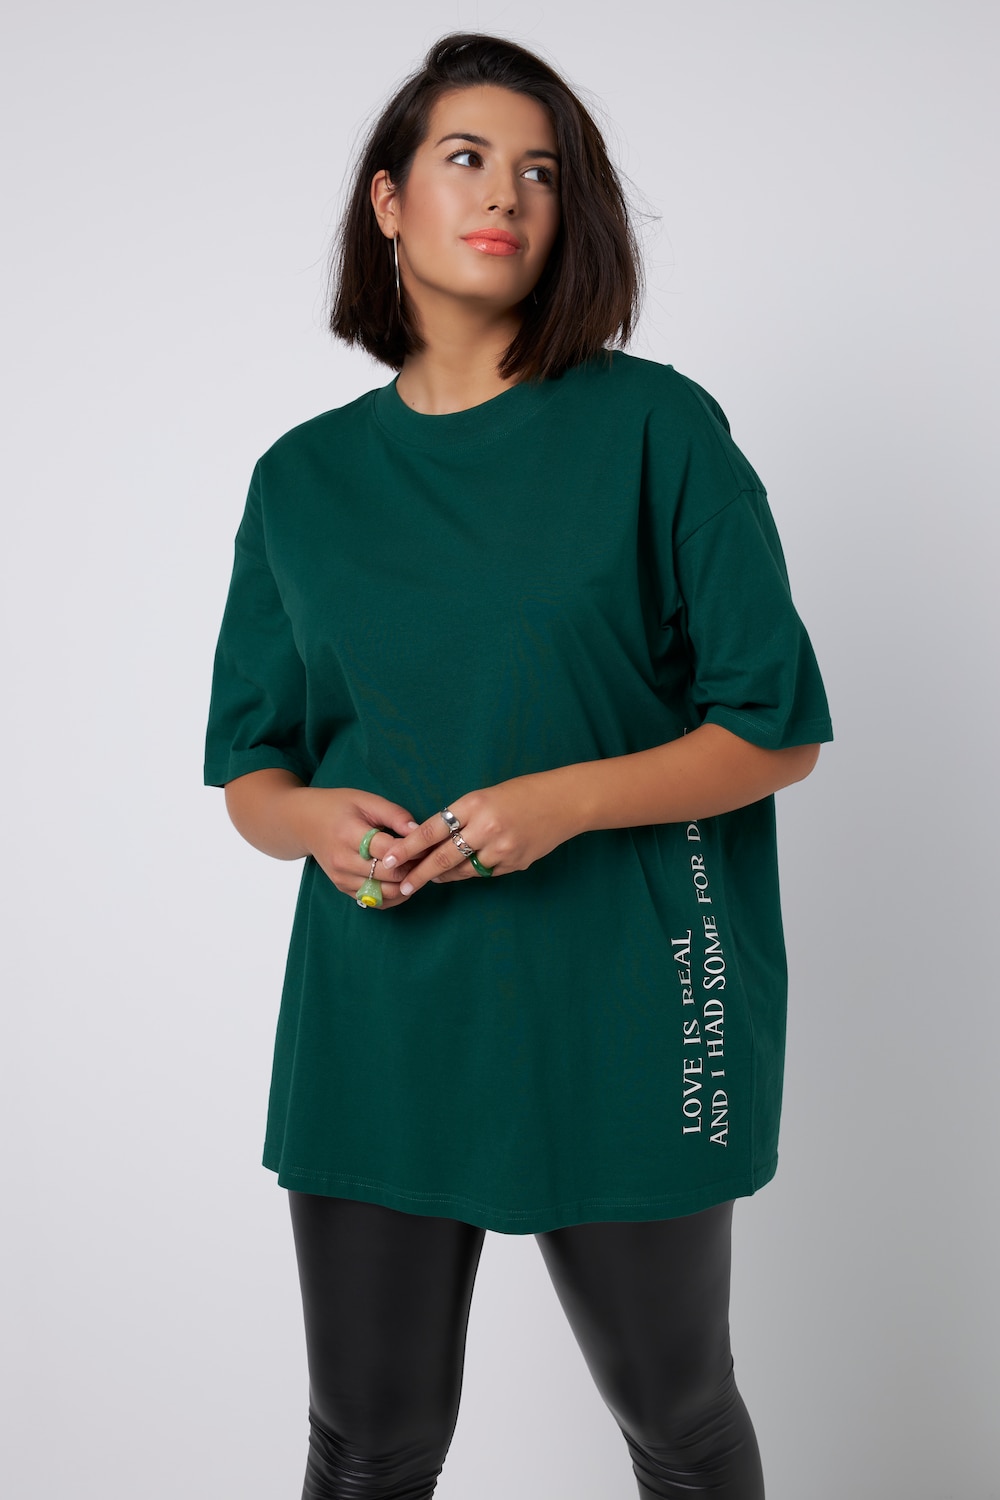 Grote Maten T-shirt, Dames, groen, Maat: 58/60, Katoen, Studio Untold